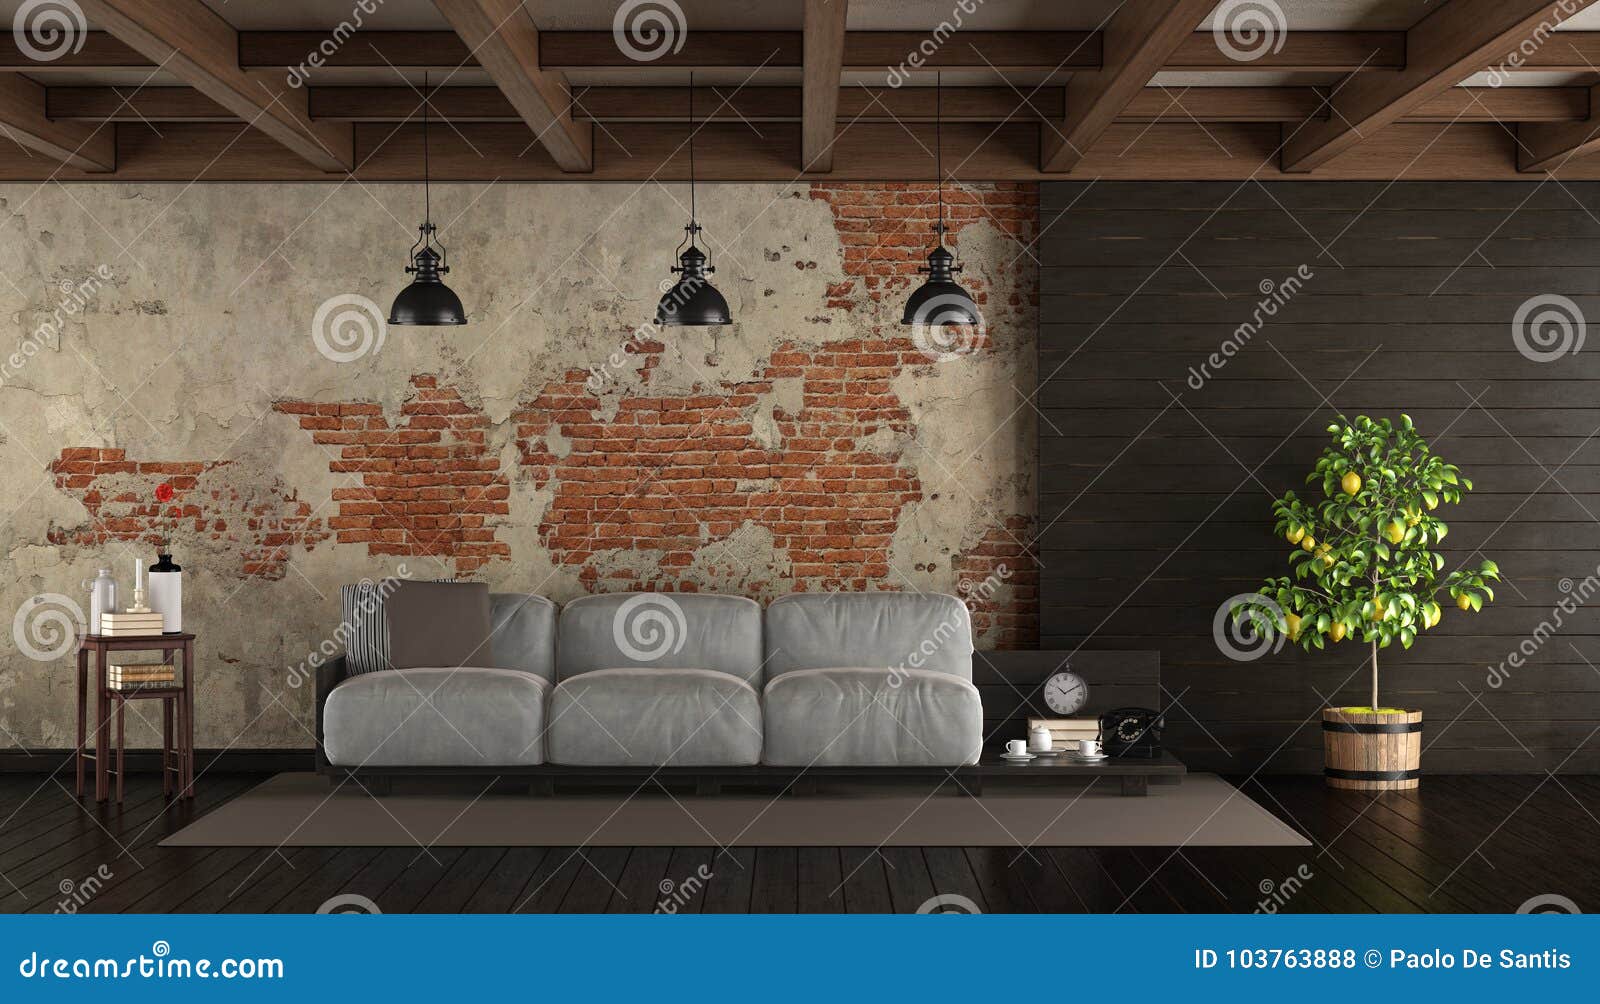 dark living room in rustic style